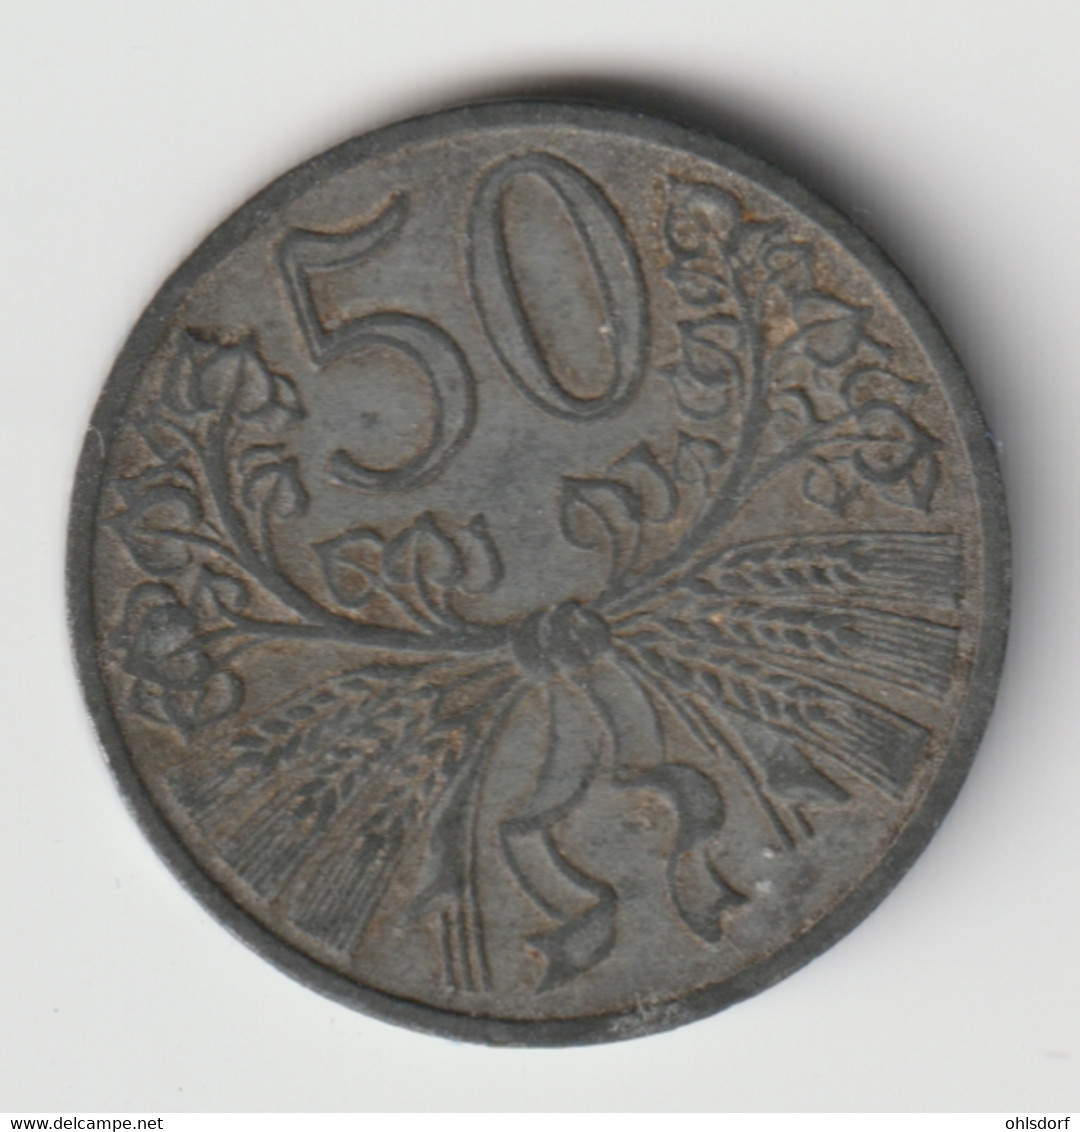 BÖHMEN UND MÄHREN 1944: 50 Haleru, KM 3 - Military Coin Minting - WWII